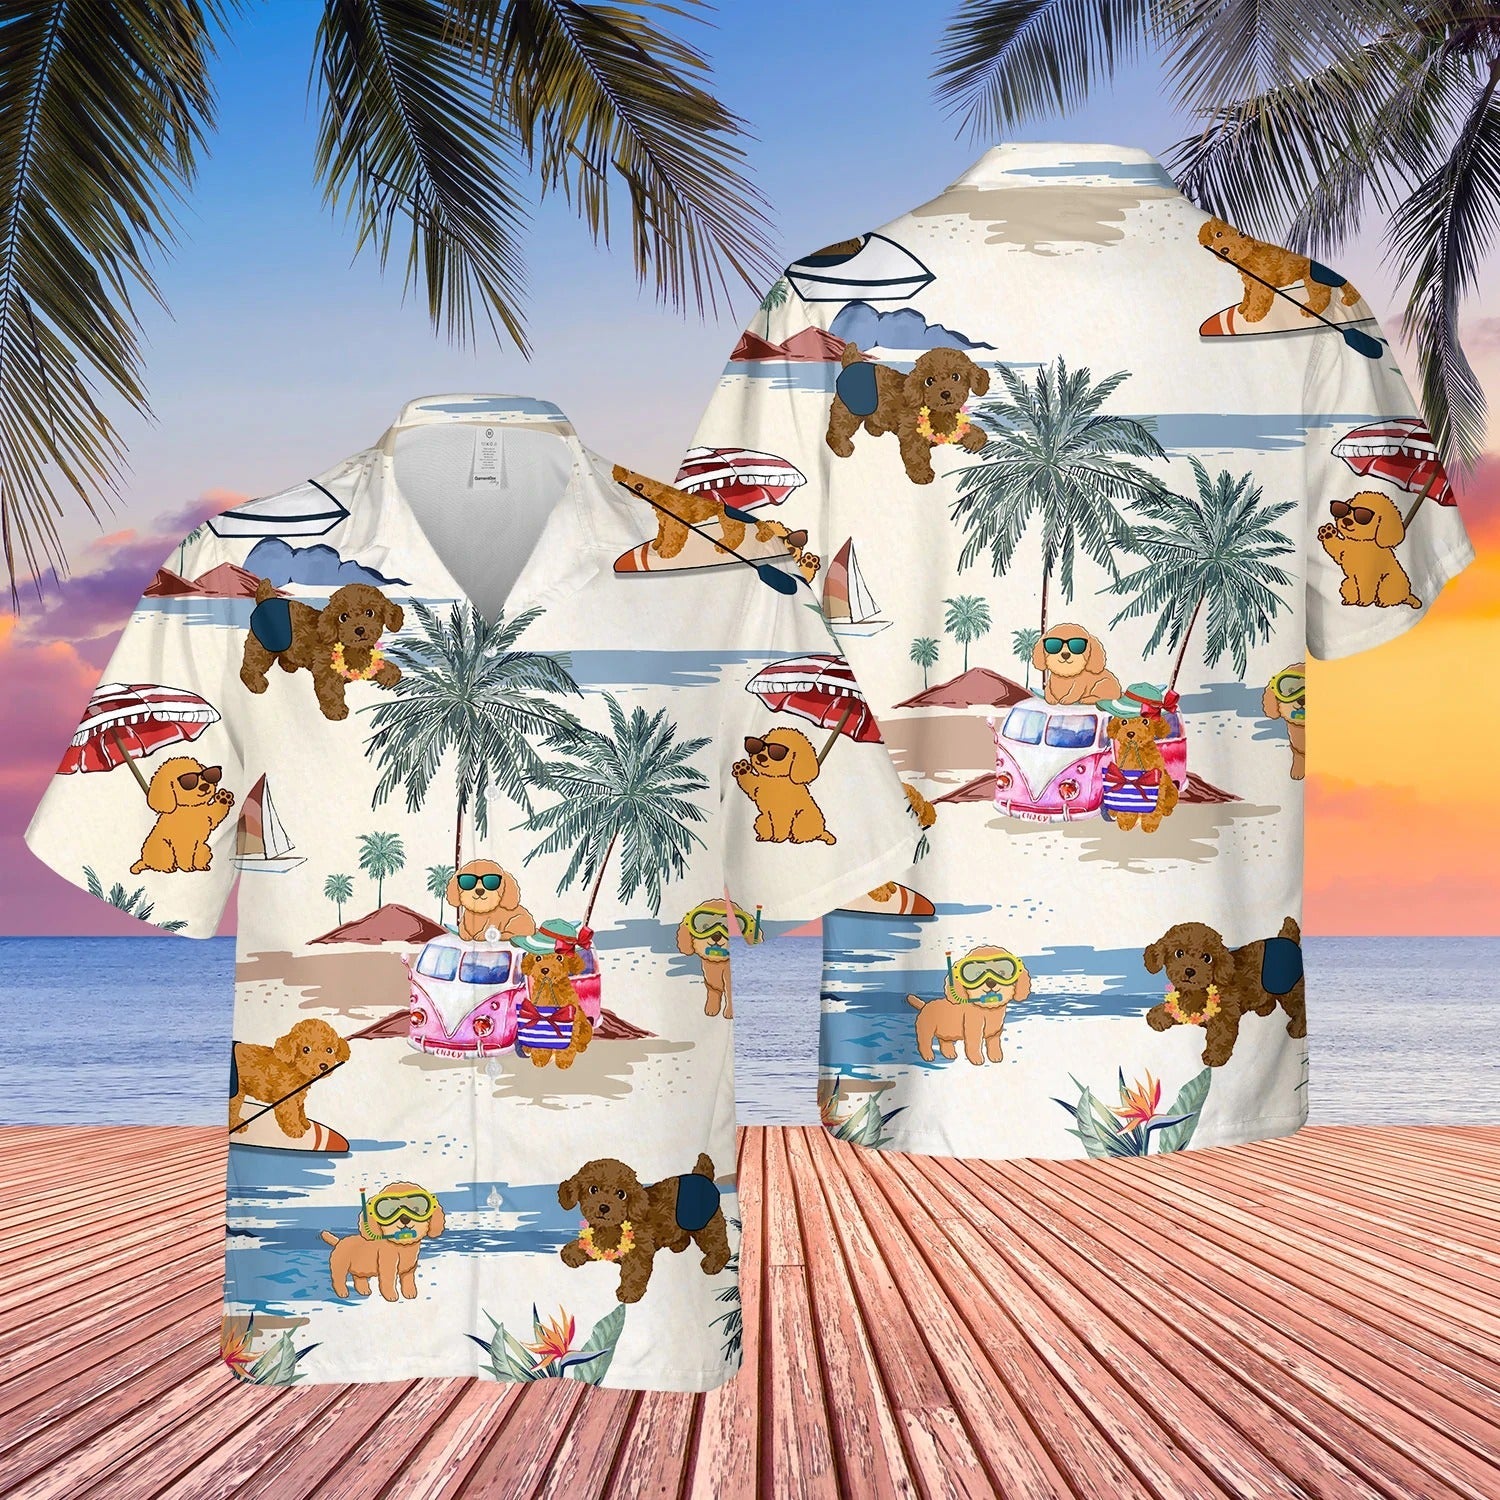 Poodle Toy Summer Beach Hawaiian Shirt/ Short Sleeve Dog Full Print Aloha Beach Shirt For Dog Lovers